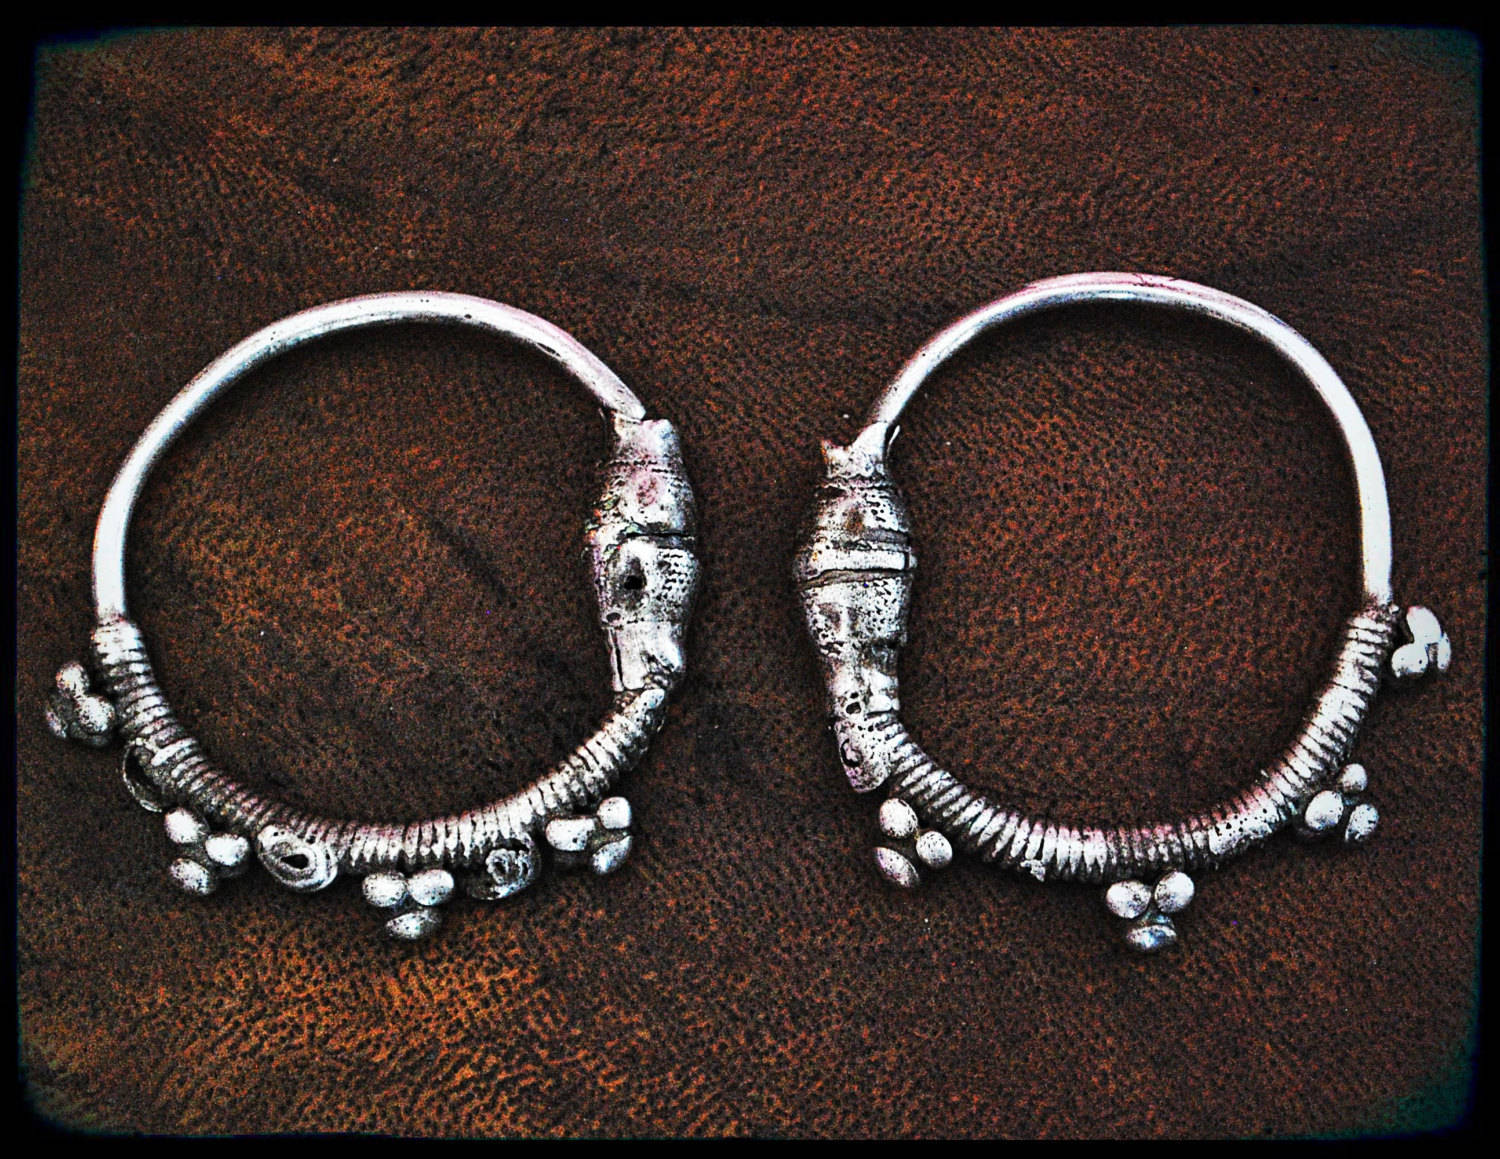 Antique Oman Bedouin Hoop Earrings - Tribal Hoop Earrings - Omani Silver Hoop Earrings - Yemen Hoop Earrings - Gauged Hoop Earrings